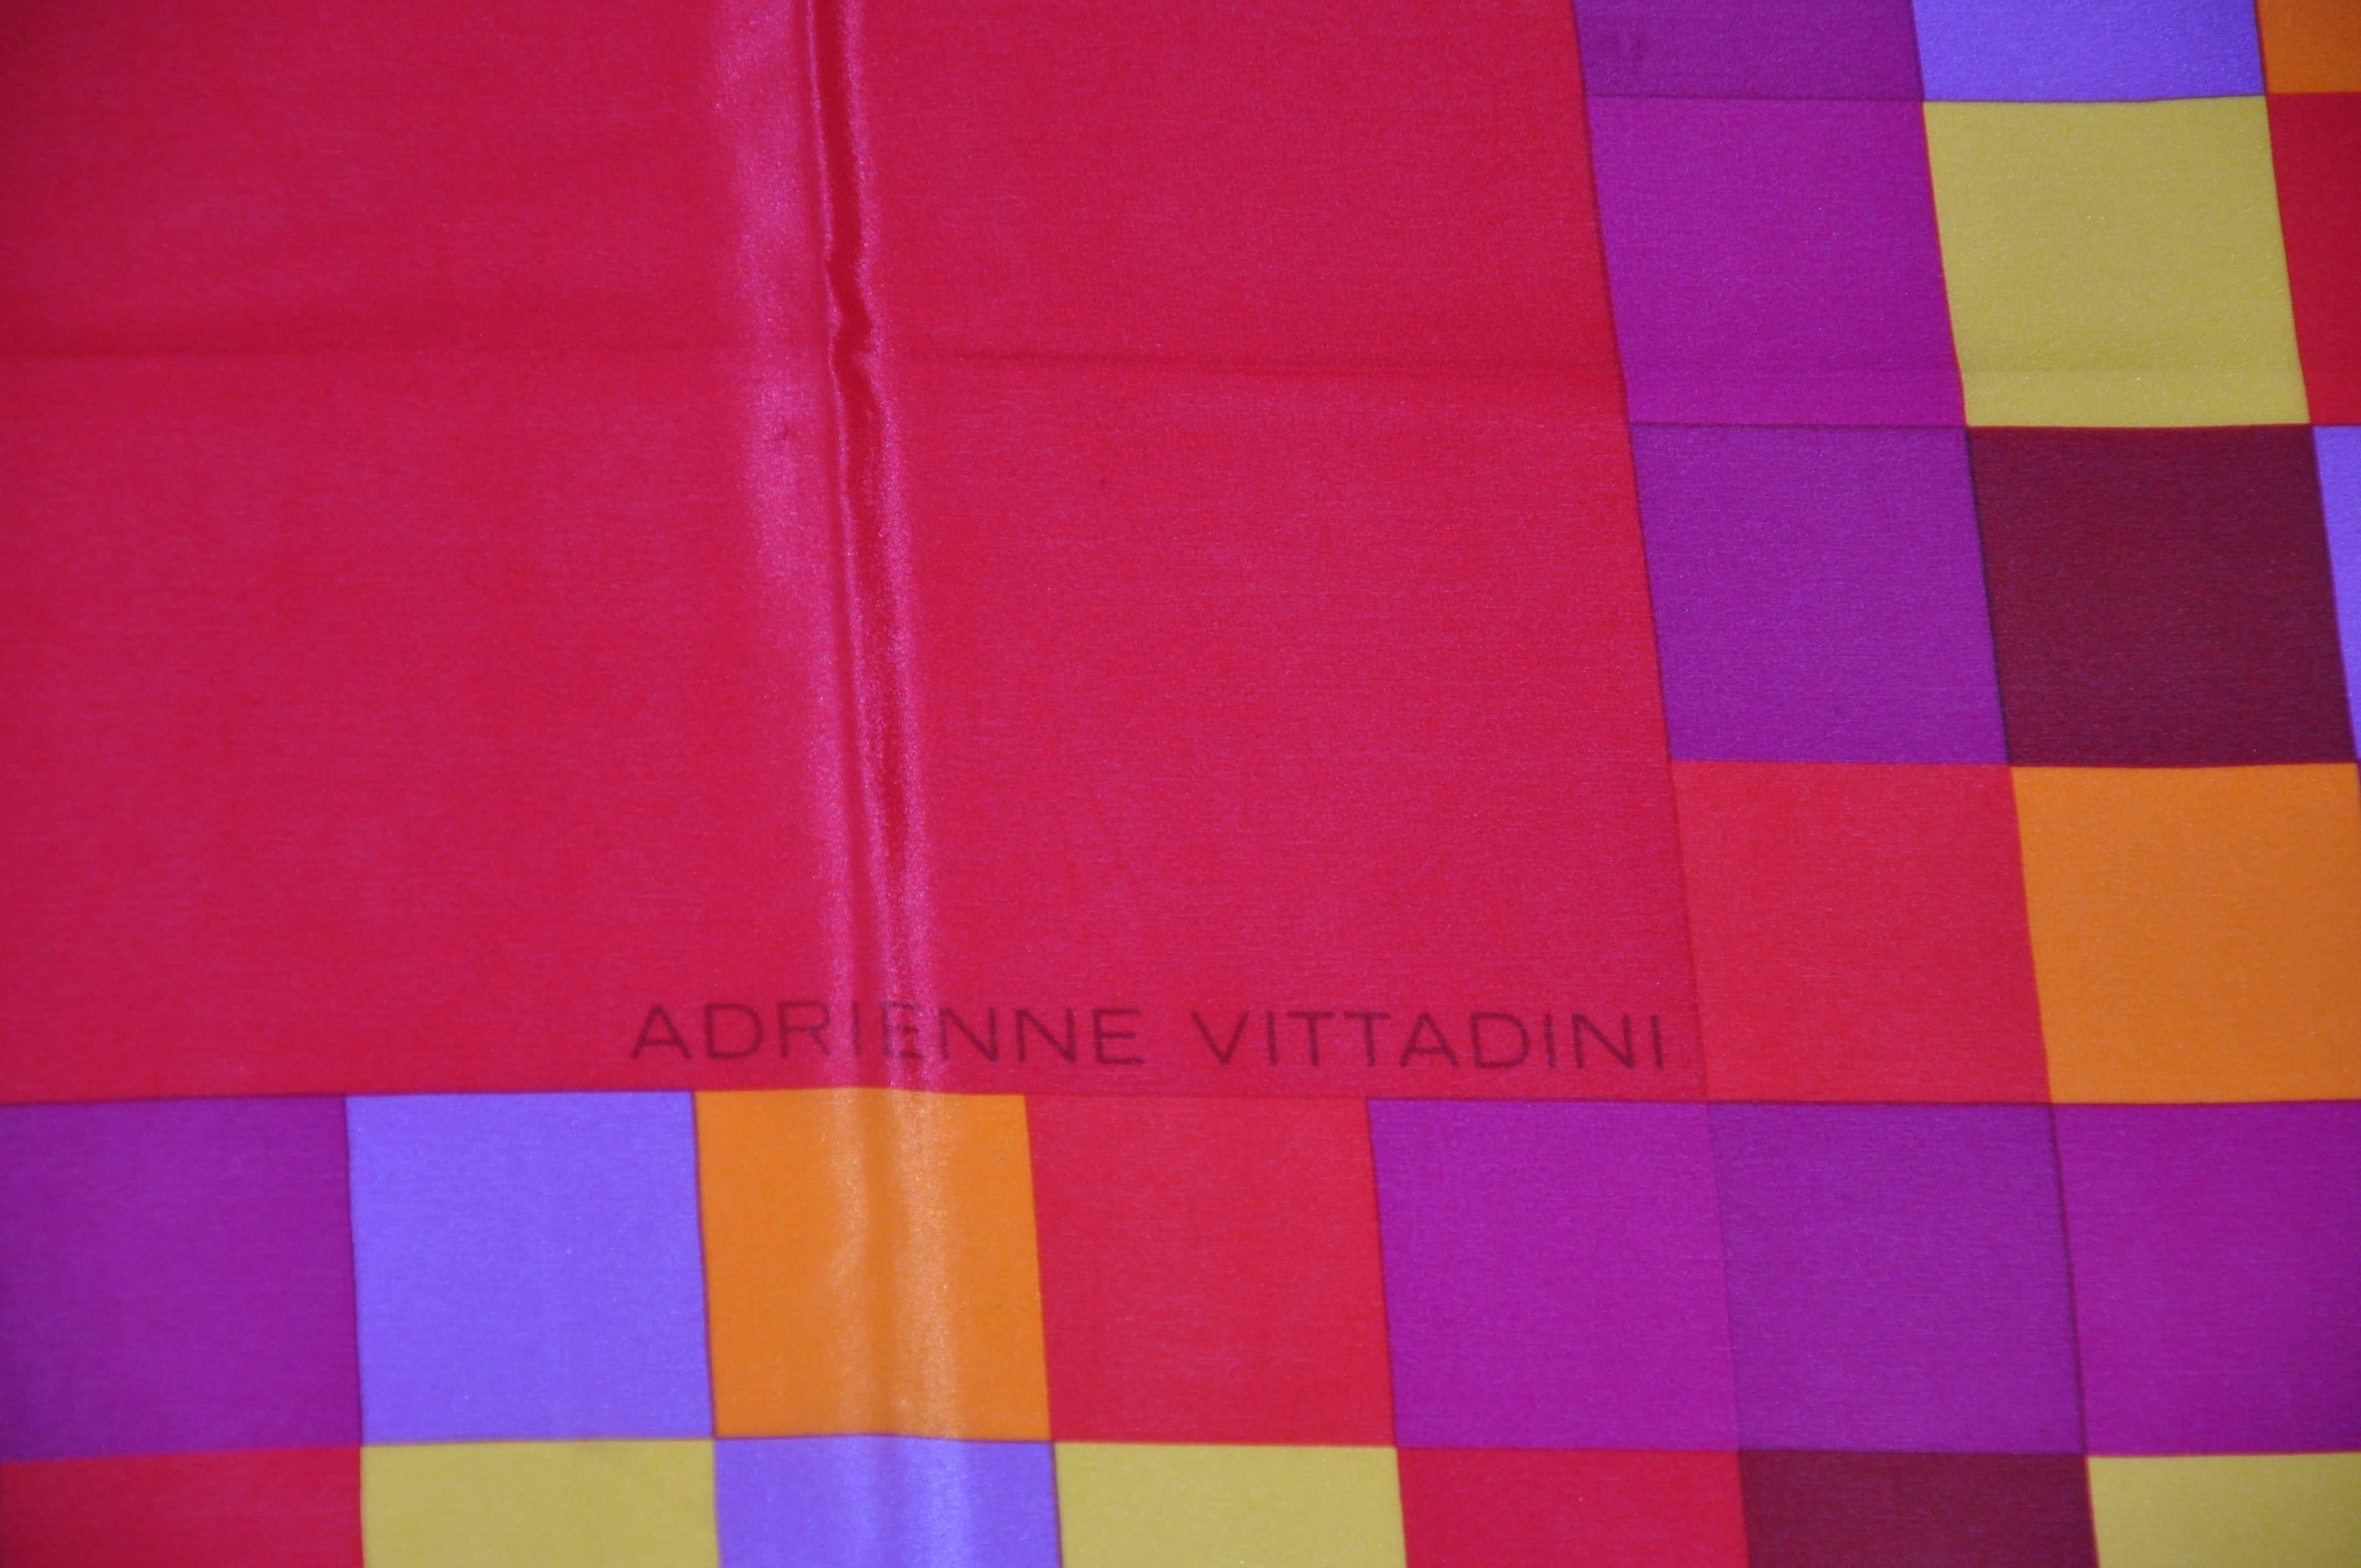 L'écharpe en soie Adrienne Vittadini, d'un rouge éclatant et audacieux avec des mini-blocs, mesure 34